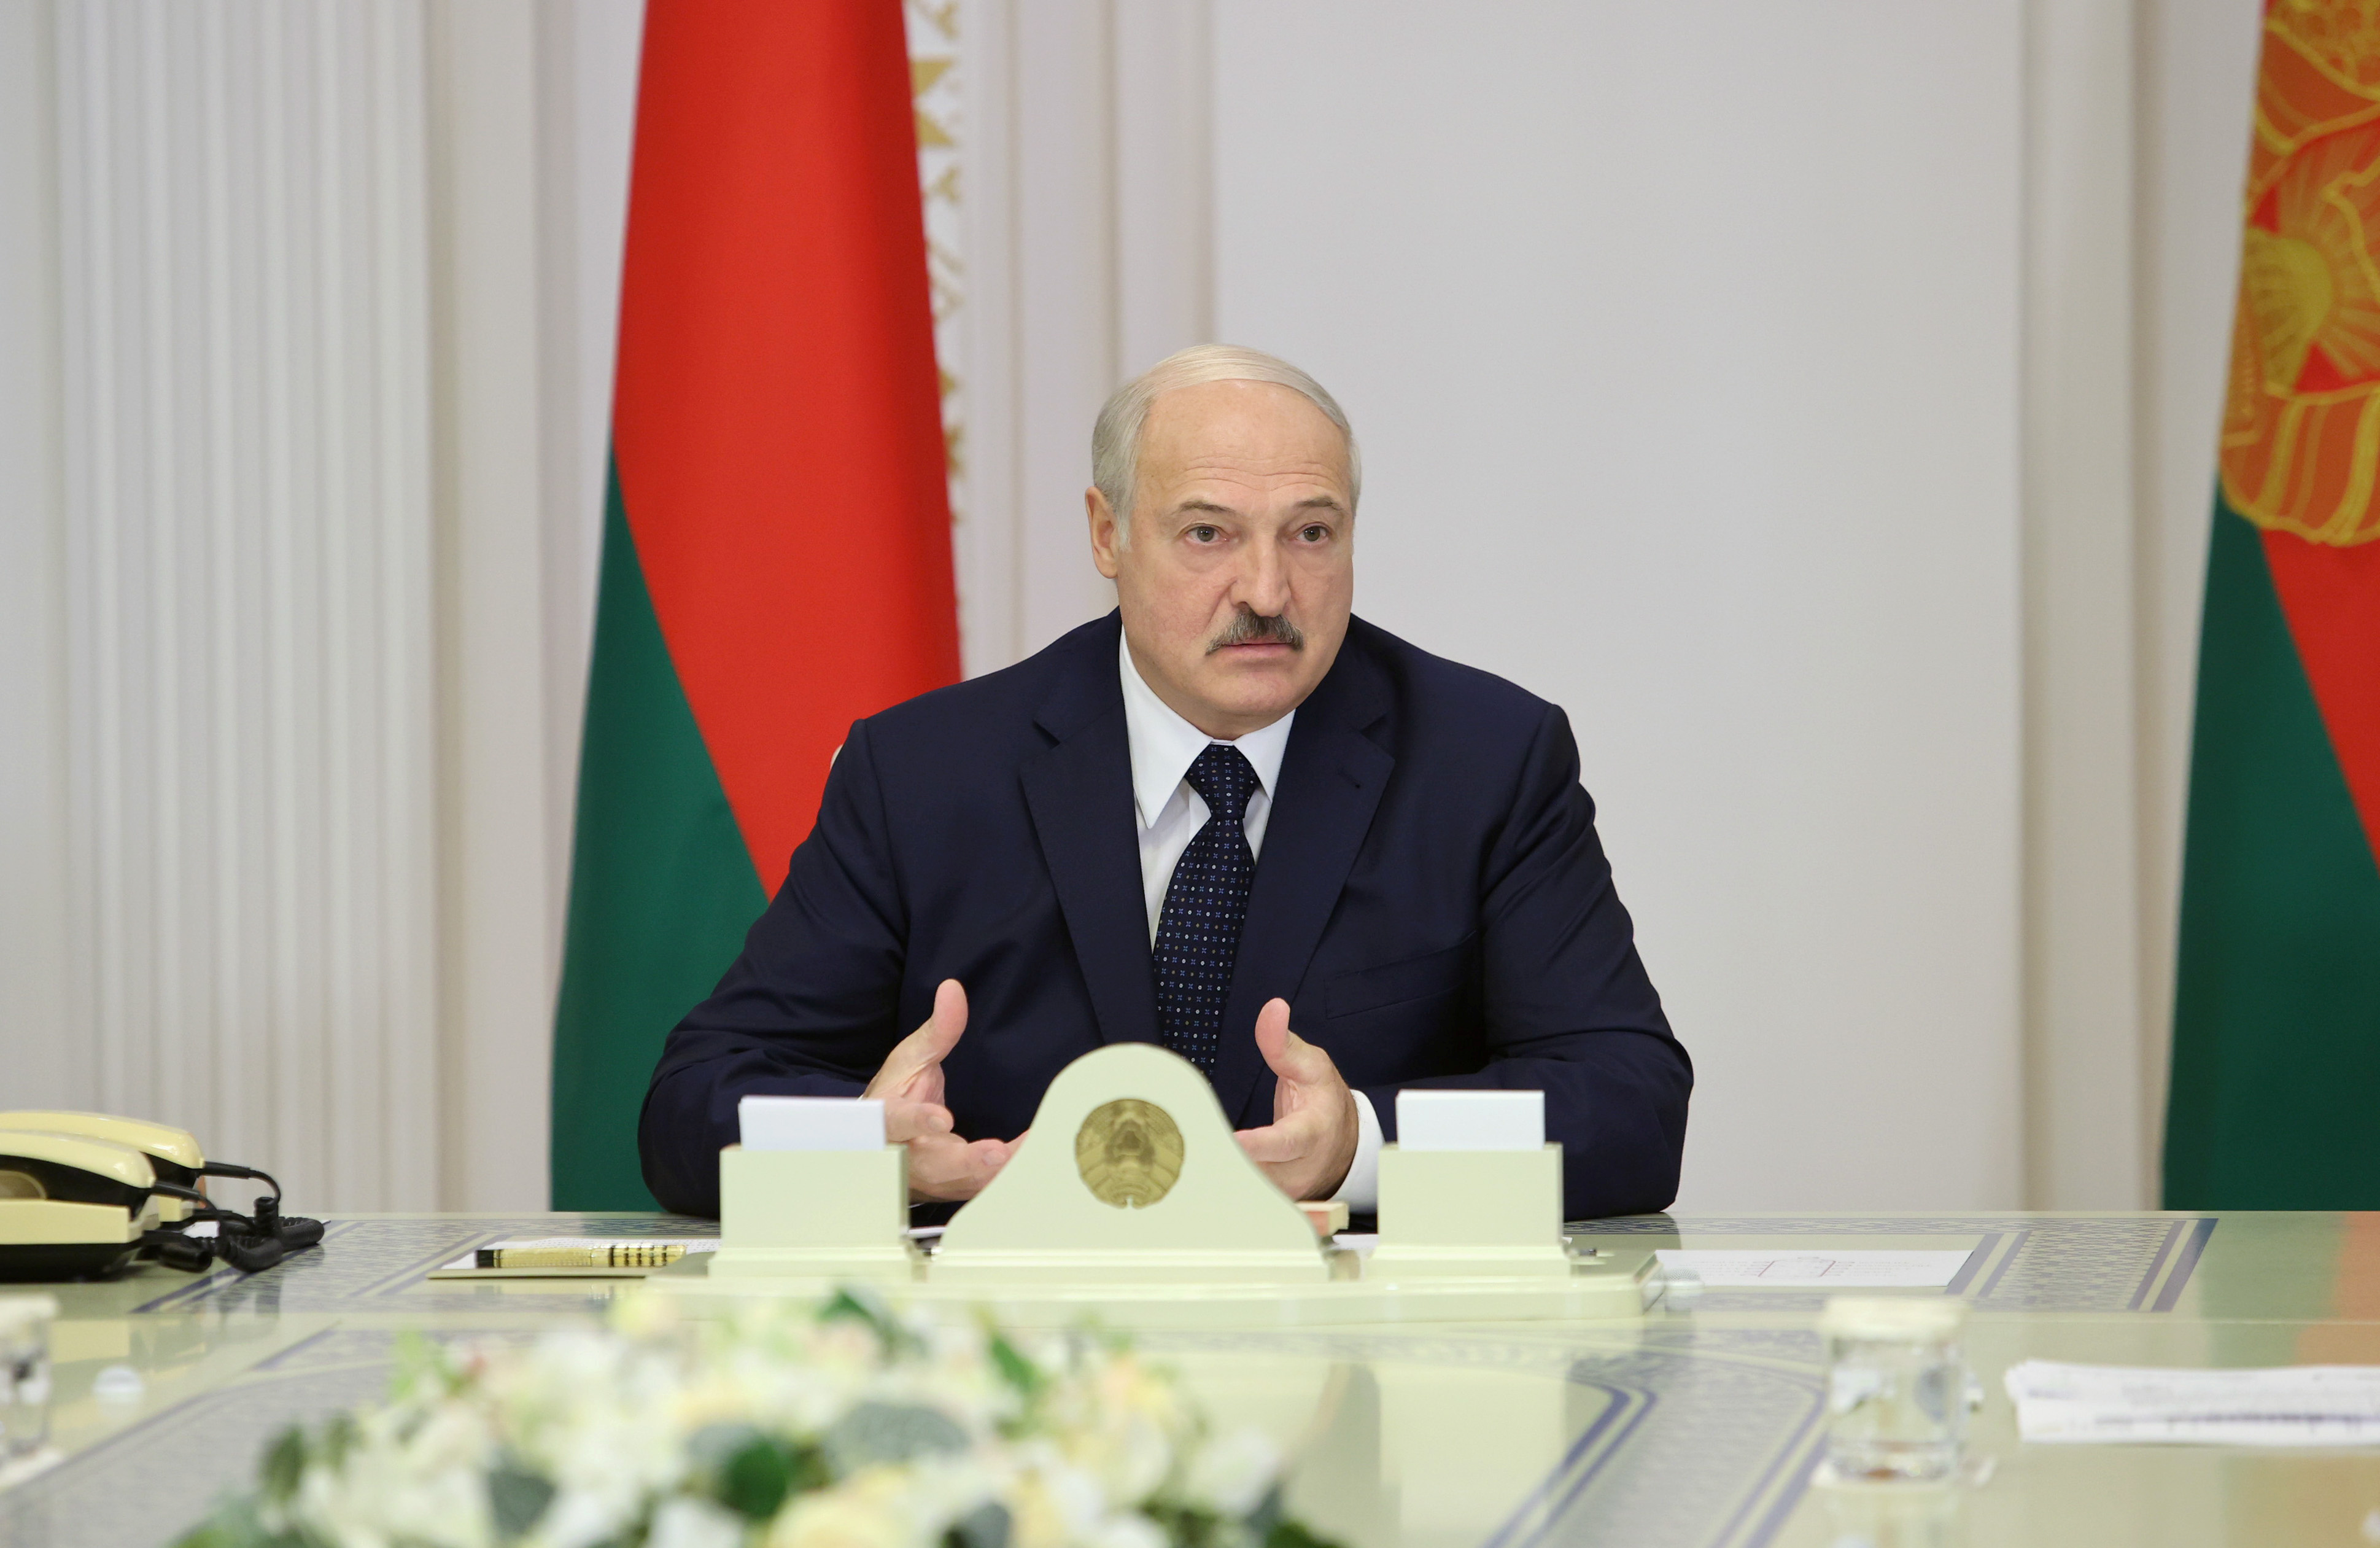 Alexander Lukashenko, presidente de Bielorrusia, en una reunión del gabinete en Minsk el 27 de agosto de 2020 (Sergei Sheleg/BelTA/Handout via REUTERS)